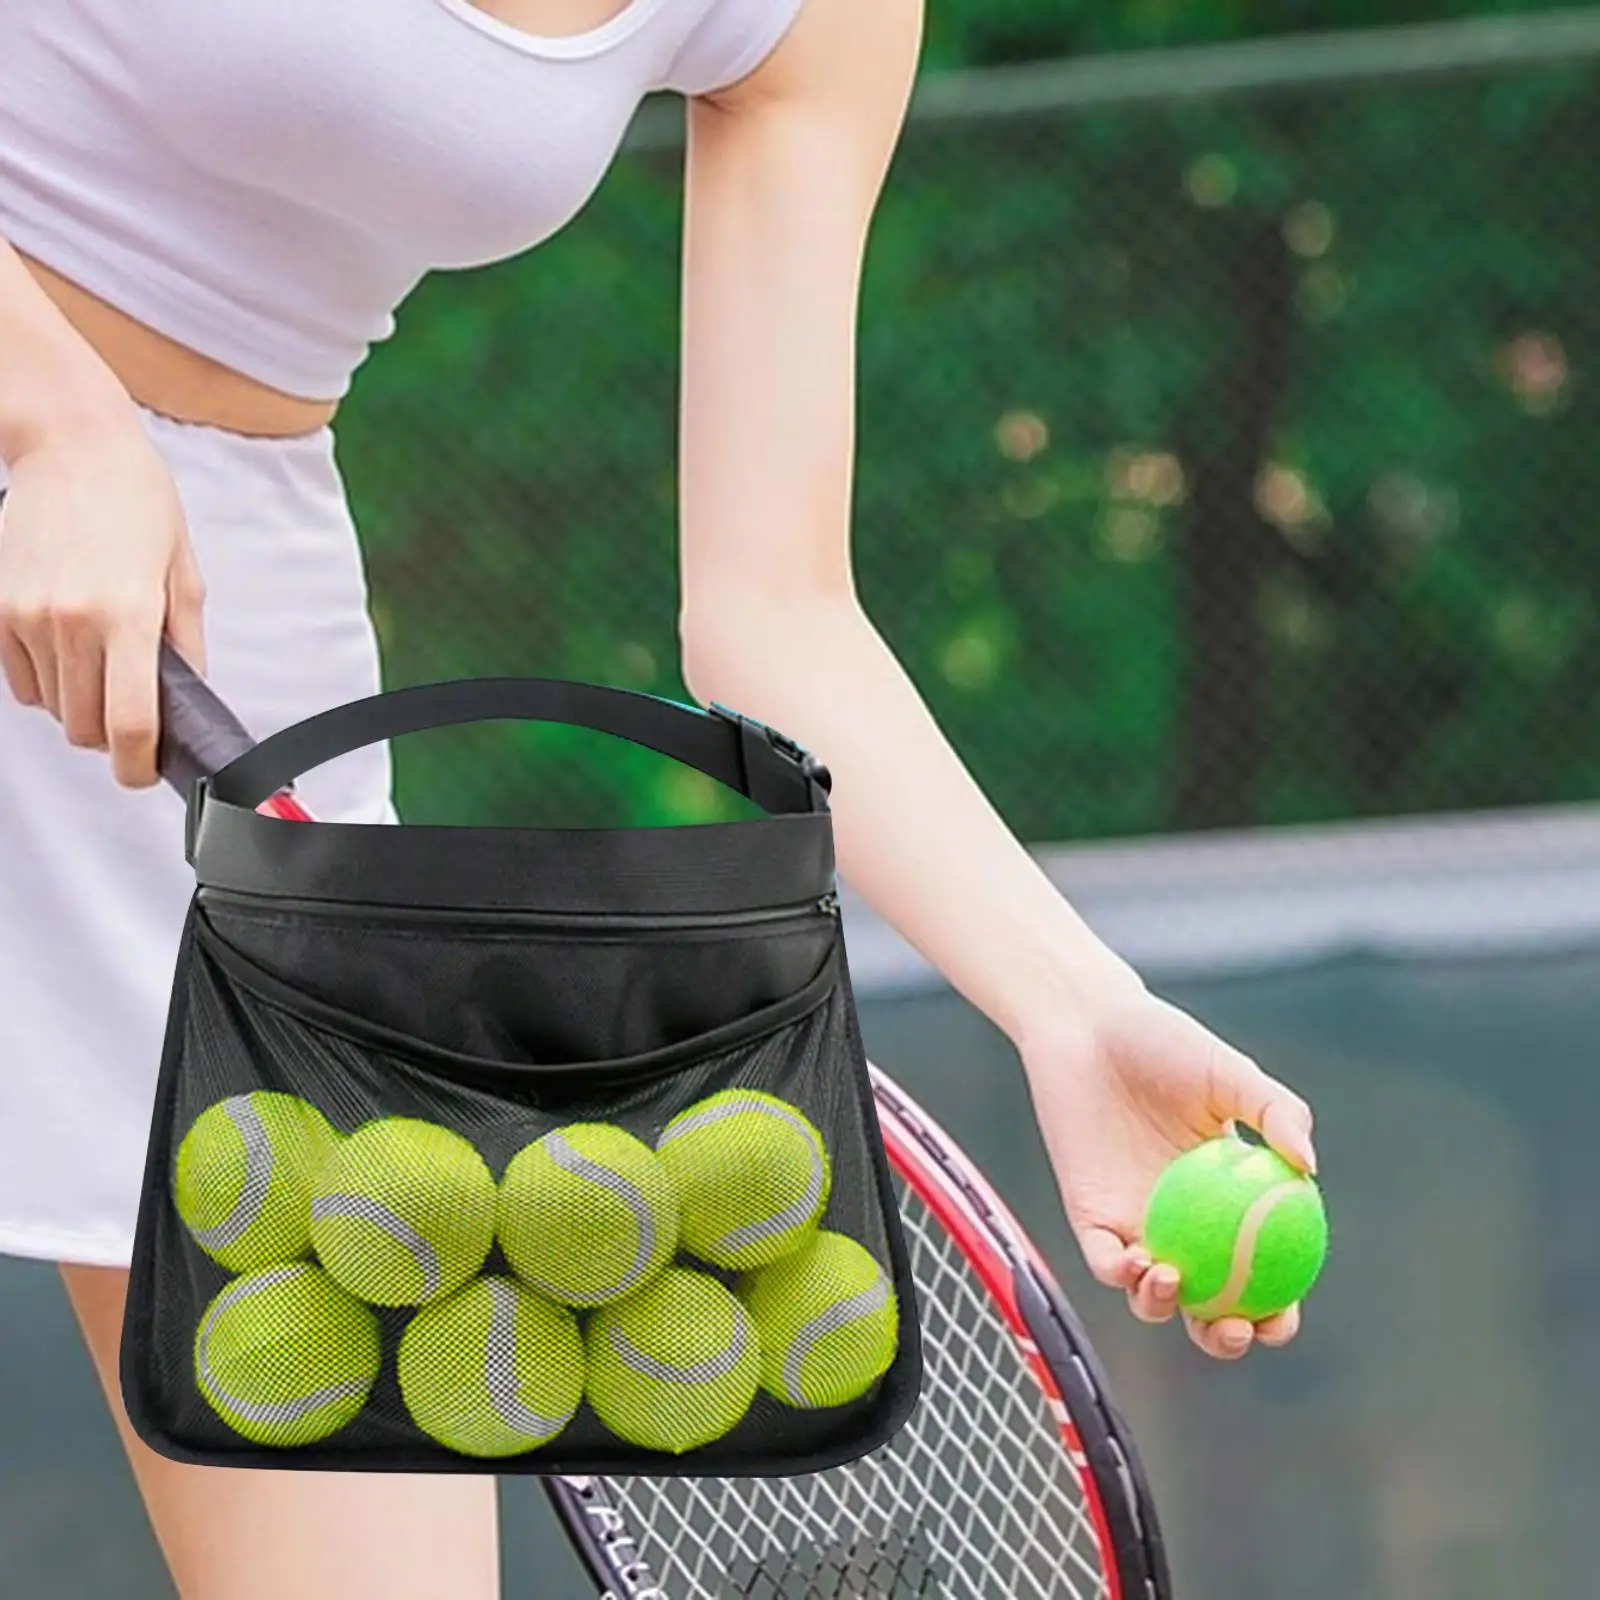 Tennis Ball Holder Tennis Ball Holder for Storing Balls and Phones